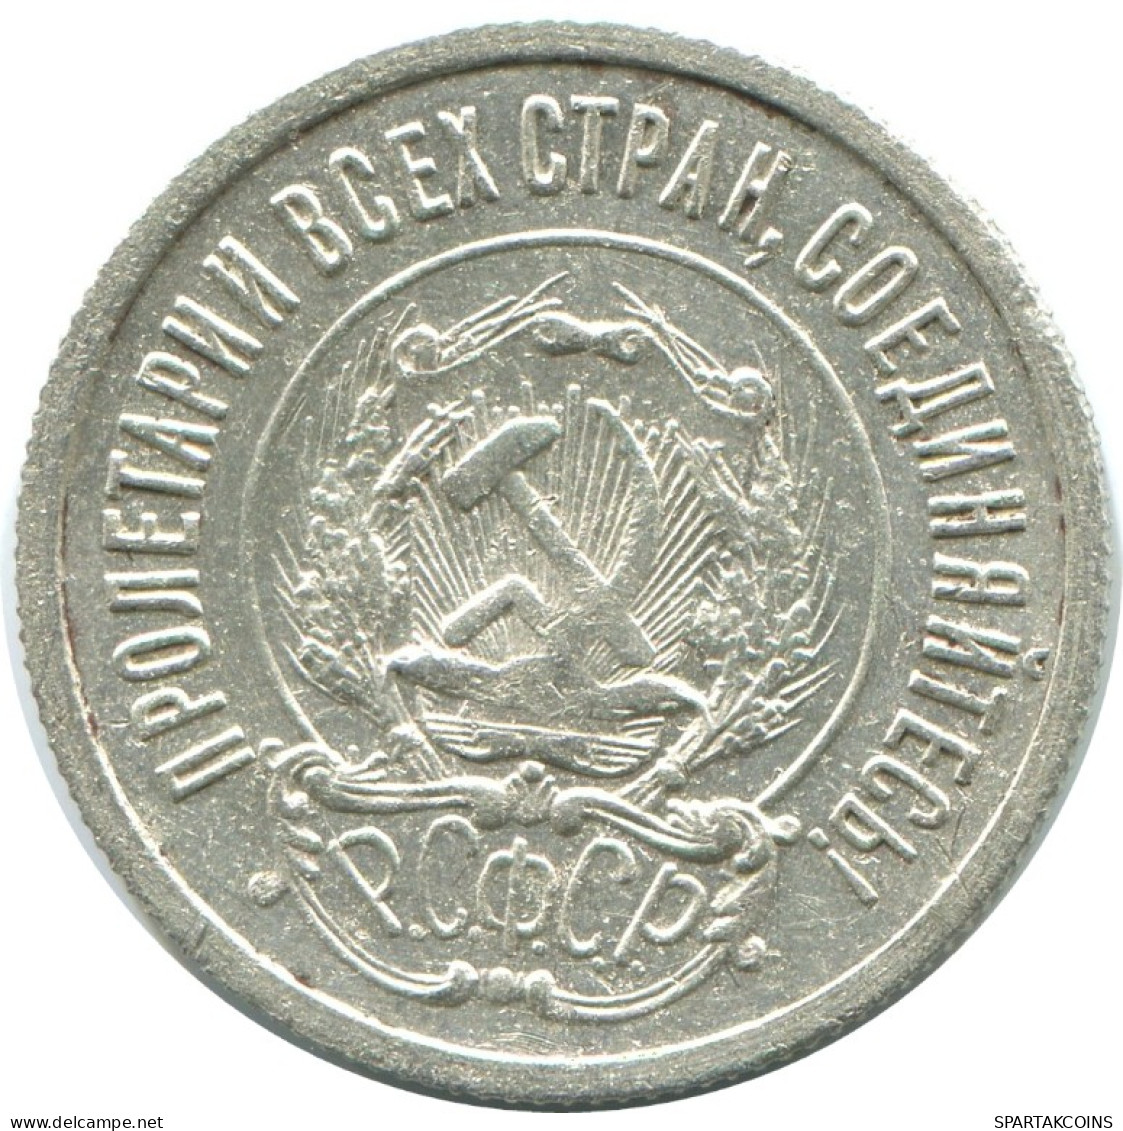 20 KOPEKS 1923 RUSSLAND RUSSIA RSFSR SILBER Münze HIGH GRADE #AF376.4.D.A - Russia